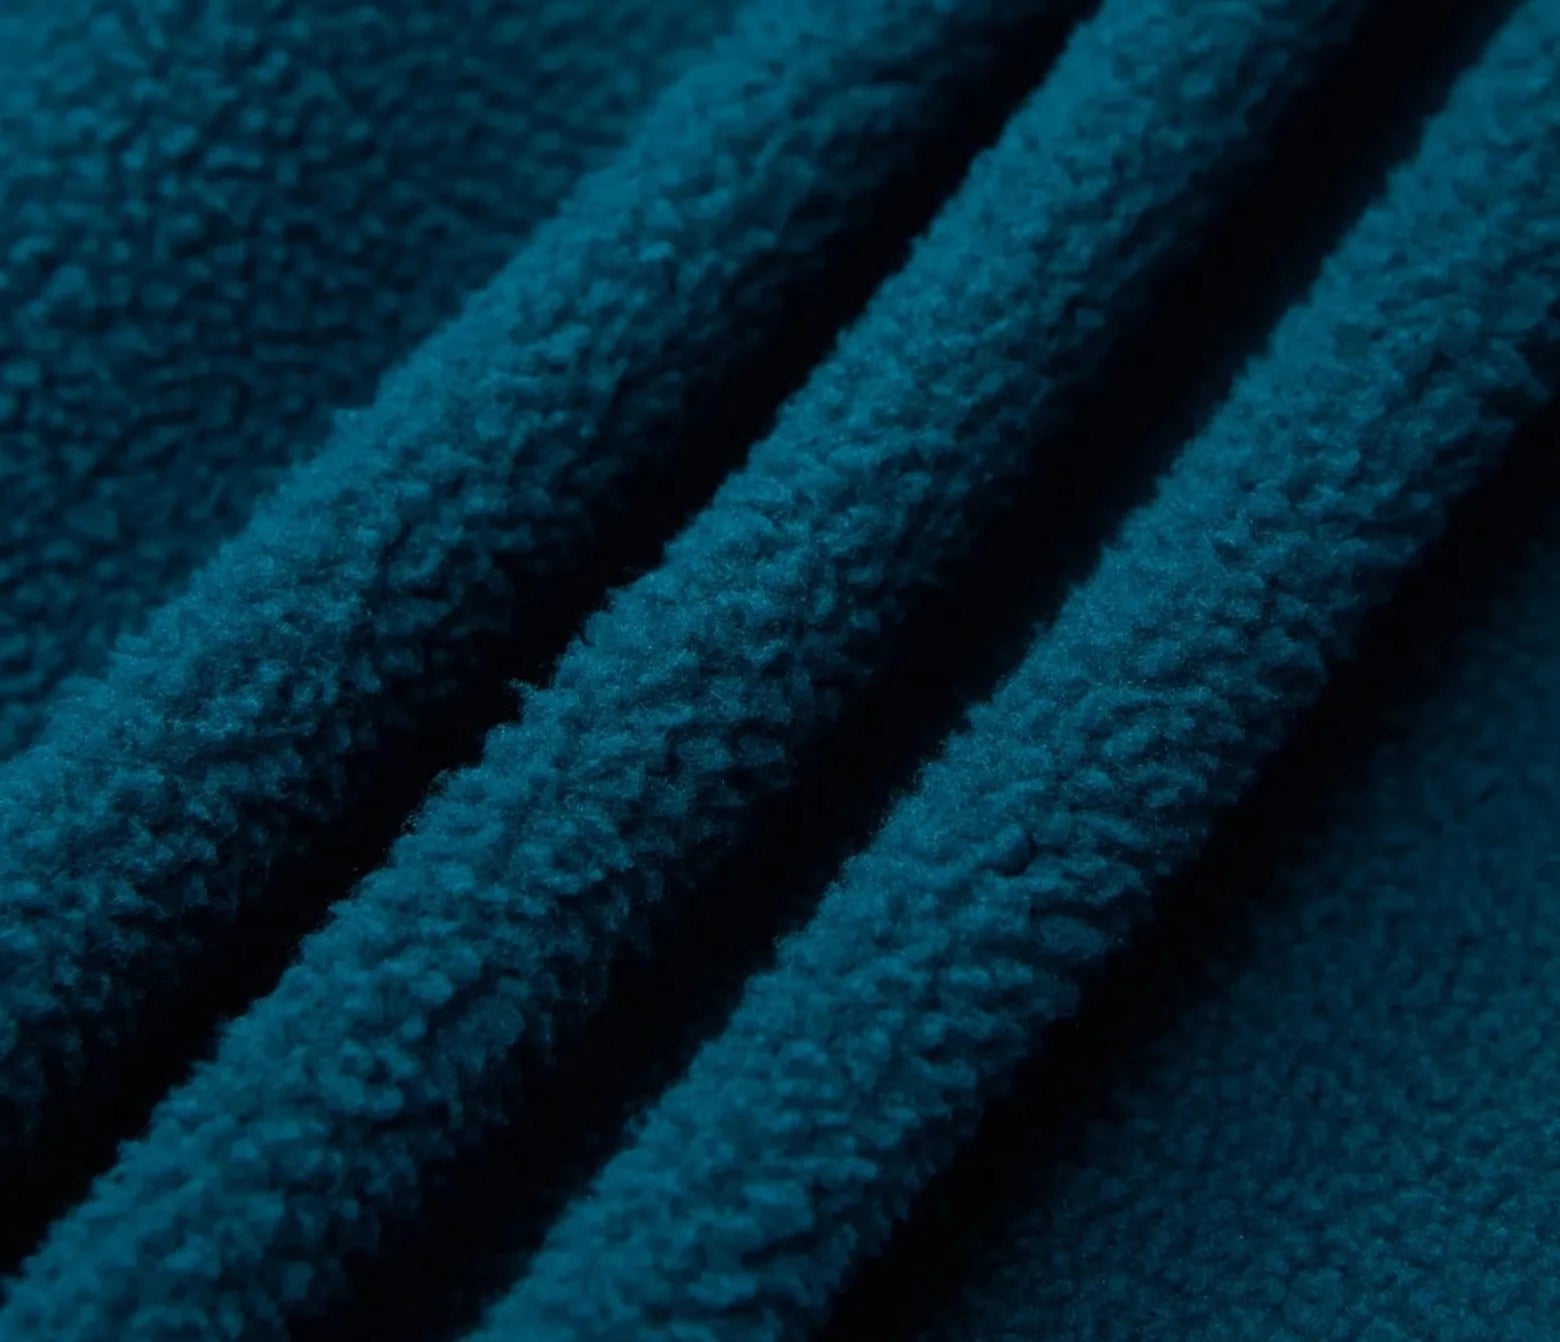 Fleece Textured Pullover Cotton Sweatshirt inner material